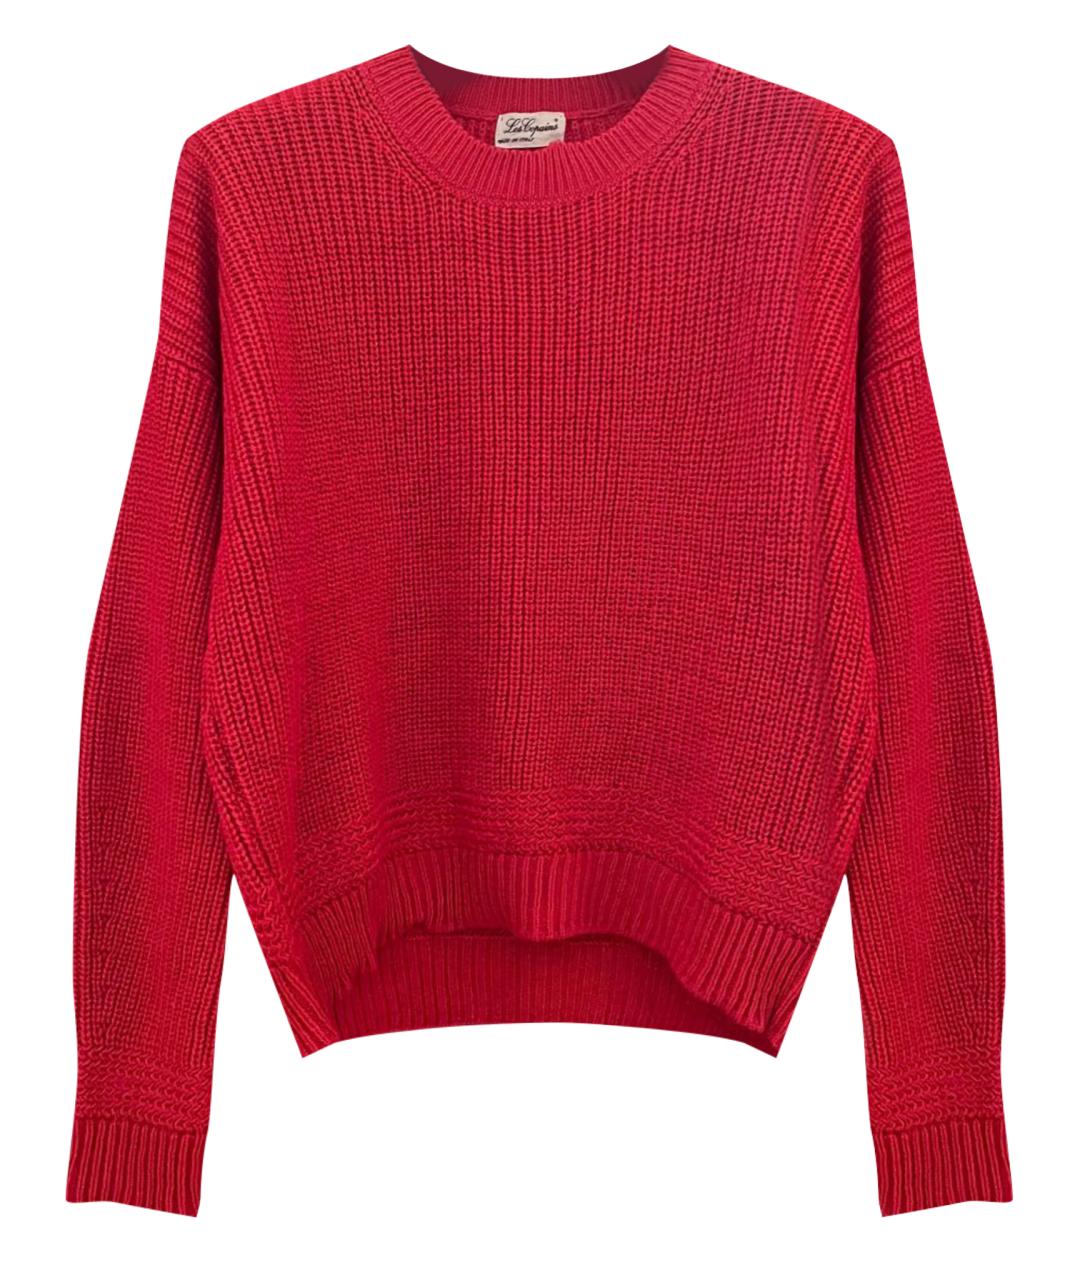 LES COPAINS Красный шерстяной джемпер / свитер, фото 1